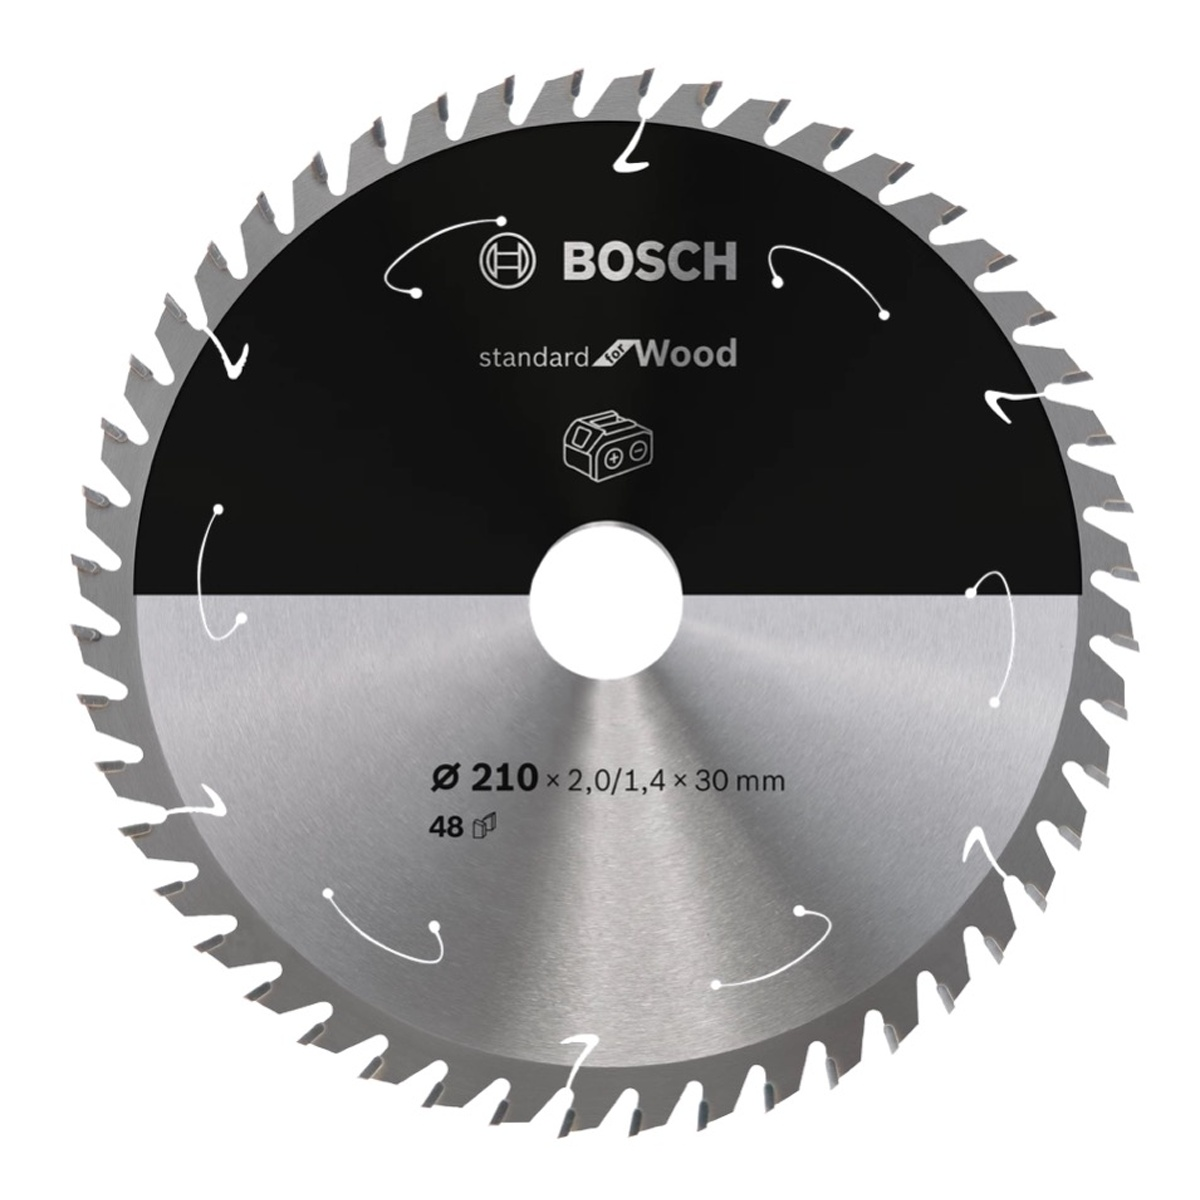 BOSCH PROFESSIONAL Bosch Professional Standard EFFICUT Blua Sägeblatt